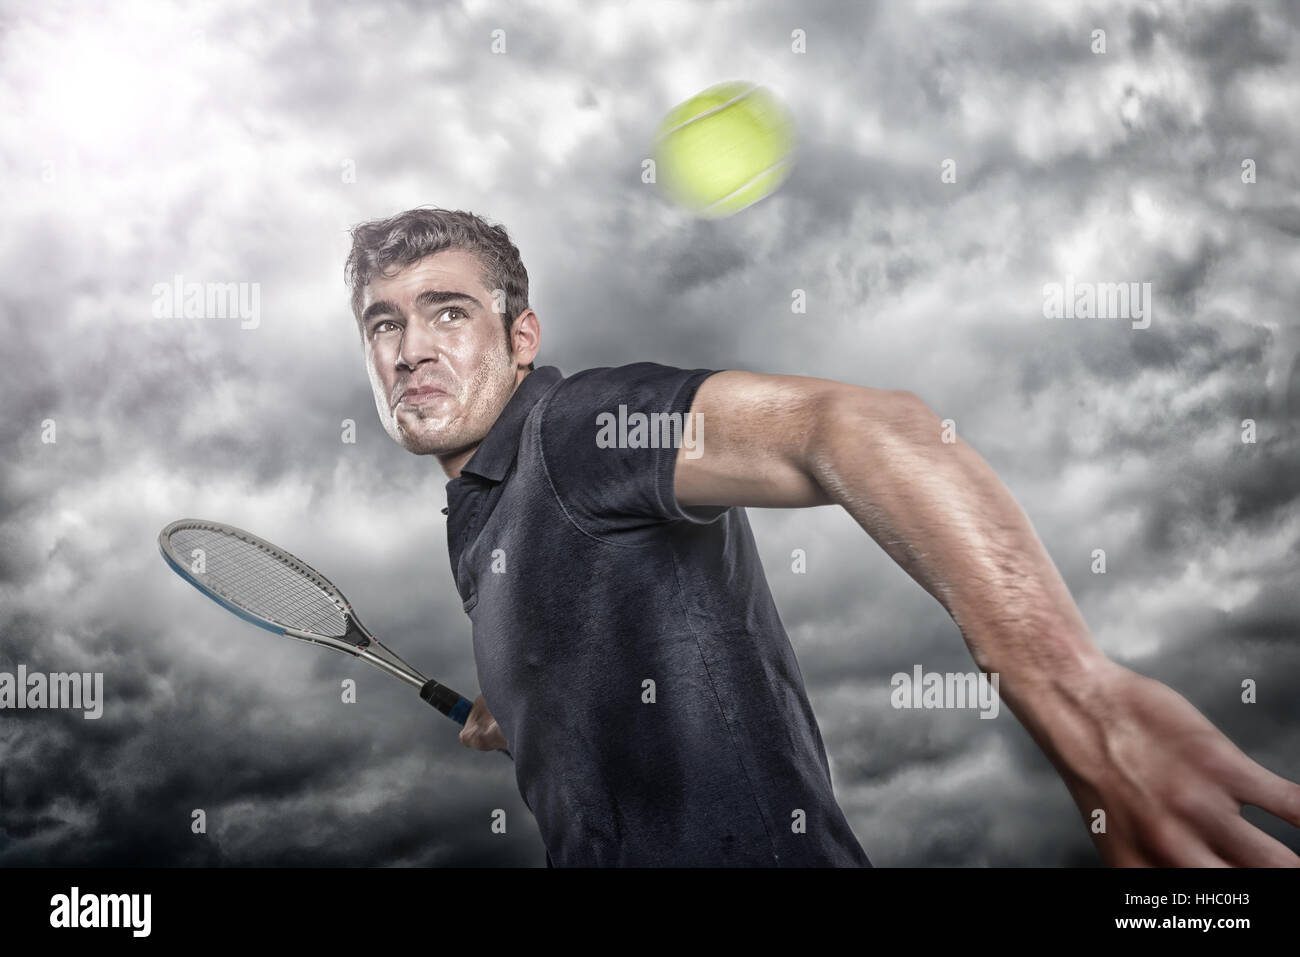 Junger Tennisspieler vor dramatischem Himmel Stock Photo